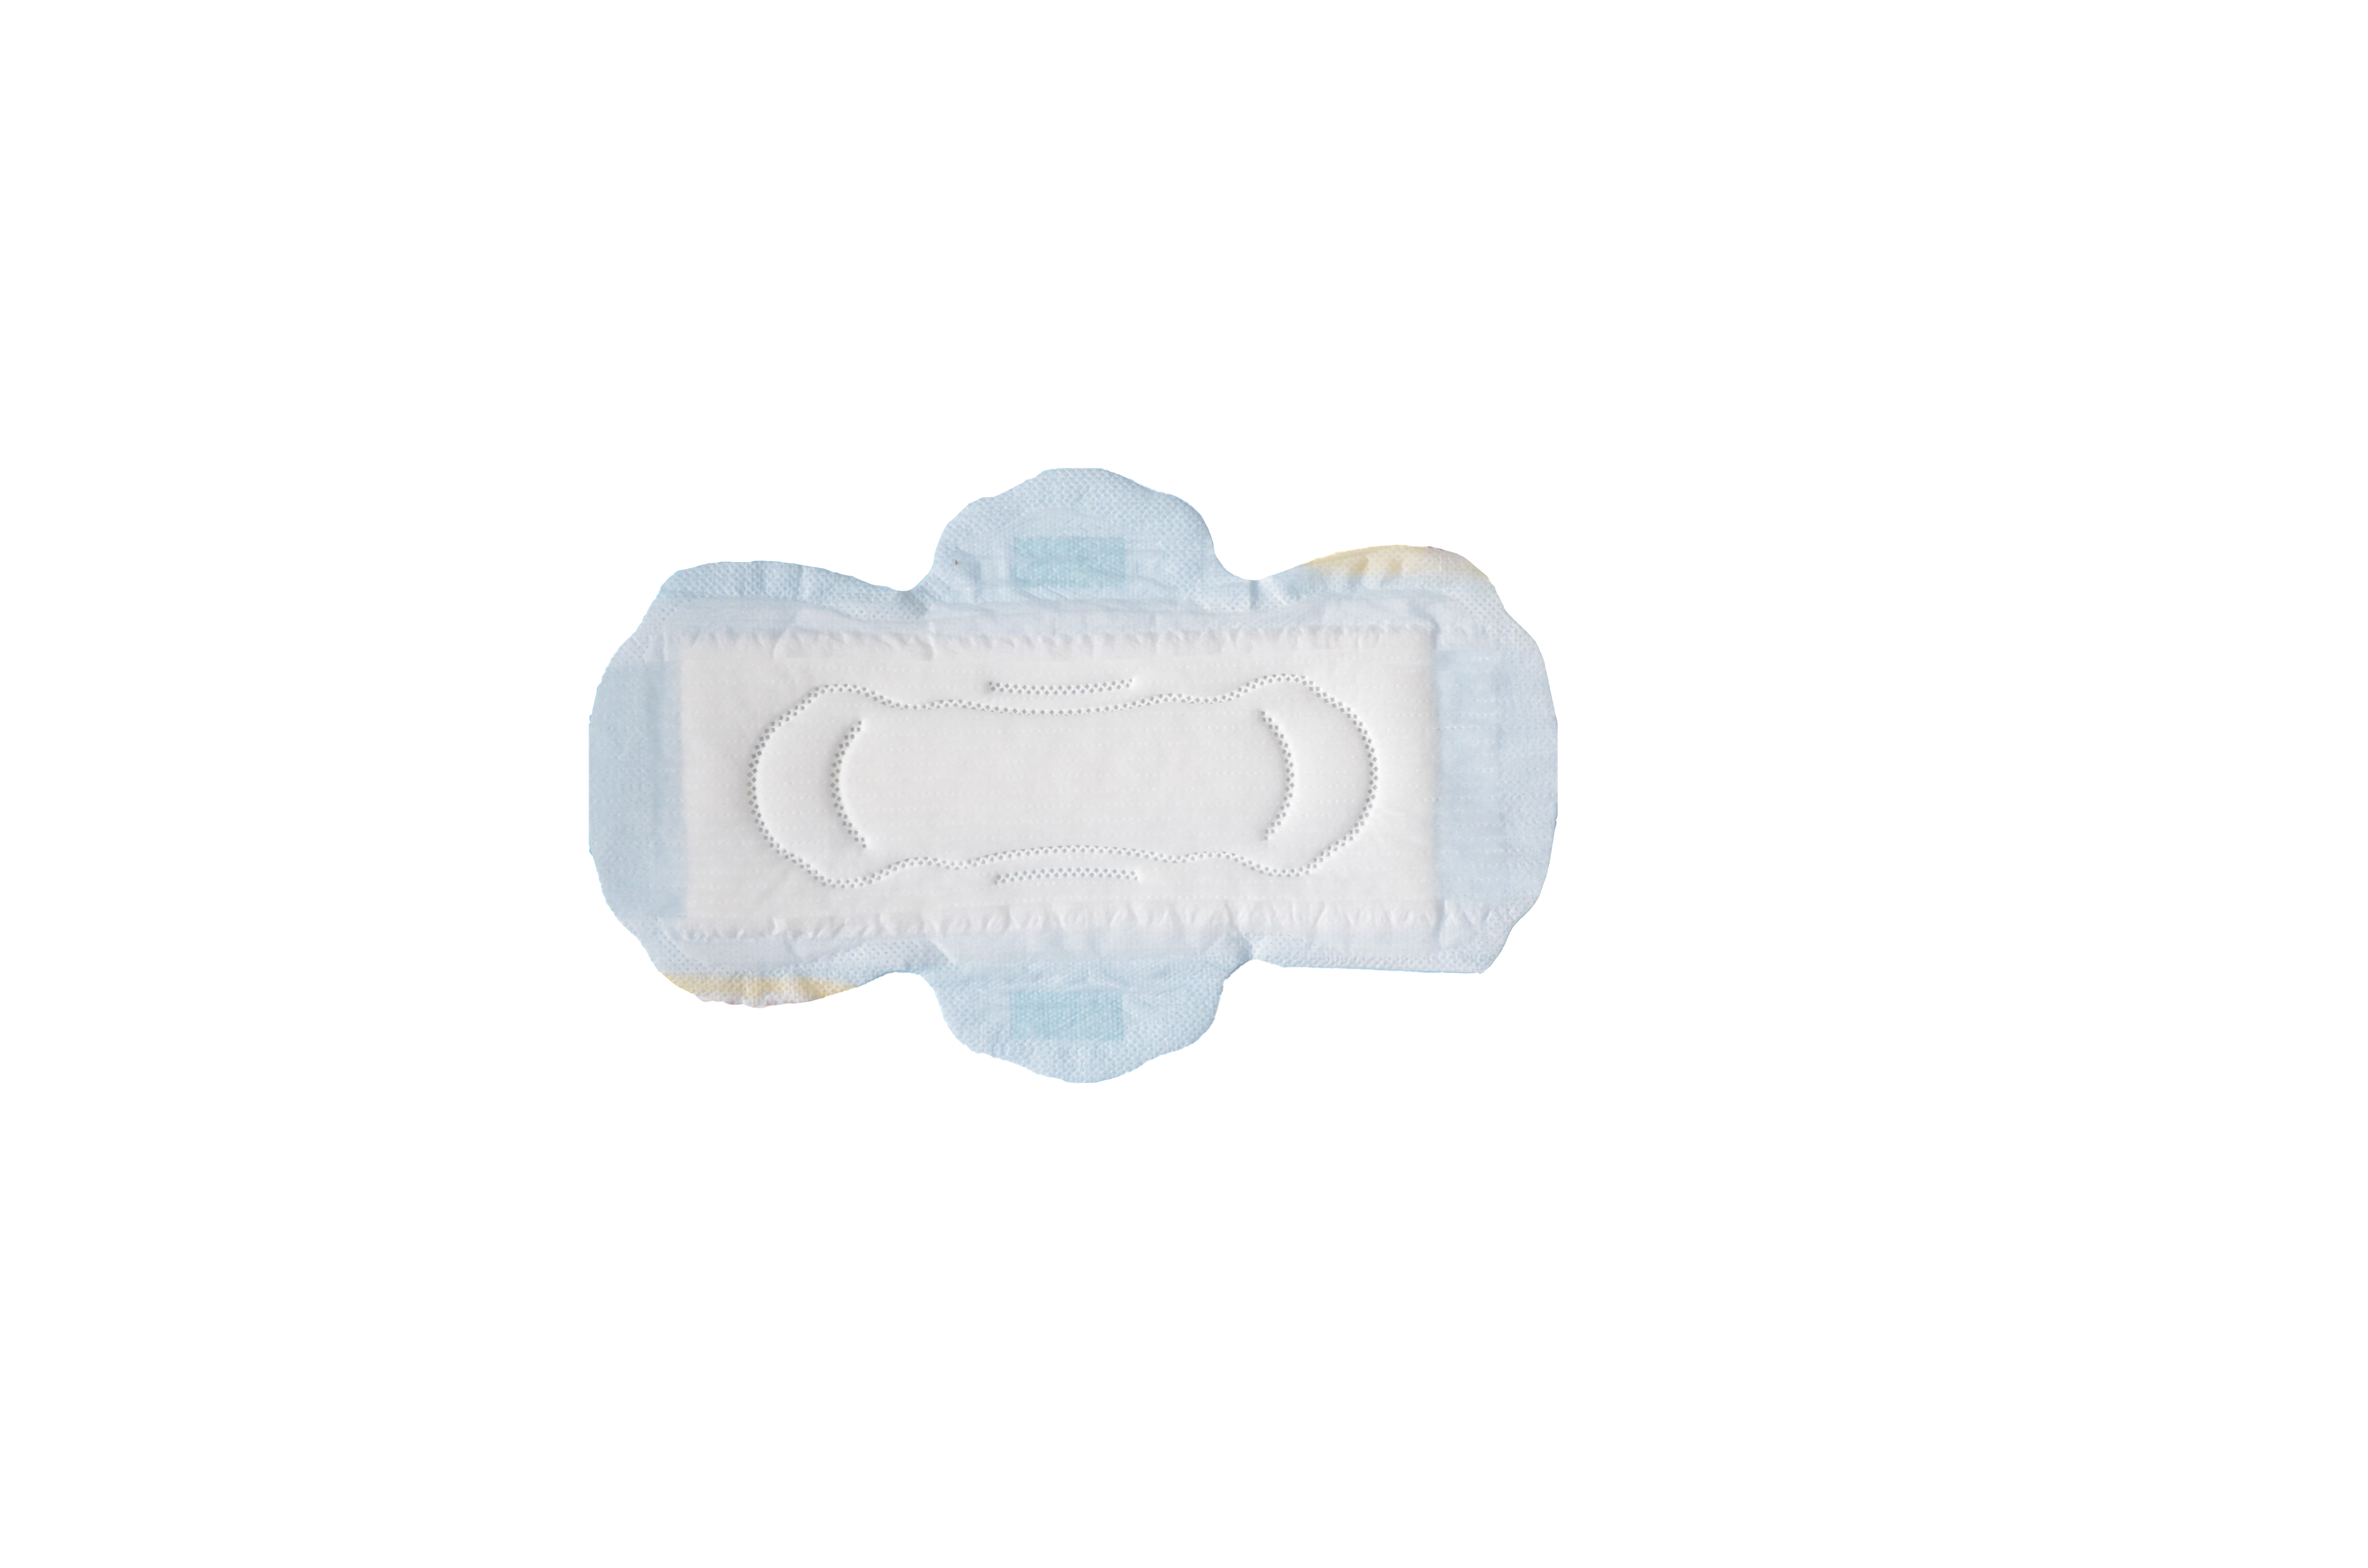 Preço de fábrica preço barato amostra grátis absorvente higiênico de algodão macio de marca própria para mulheres